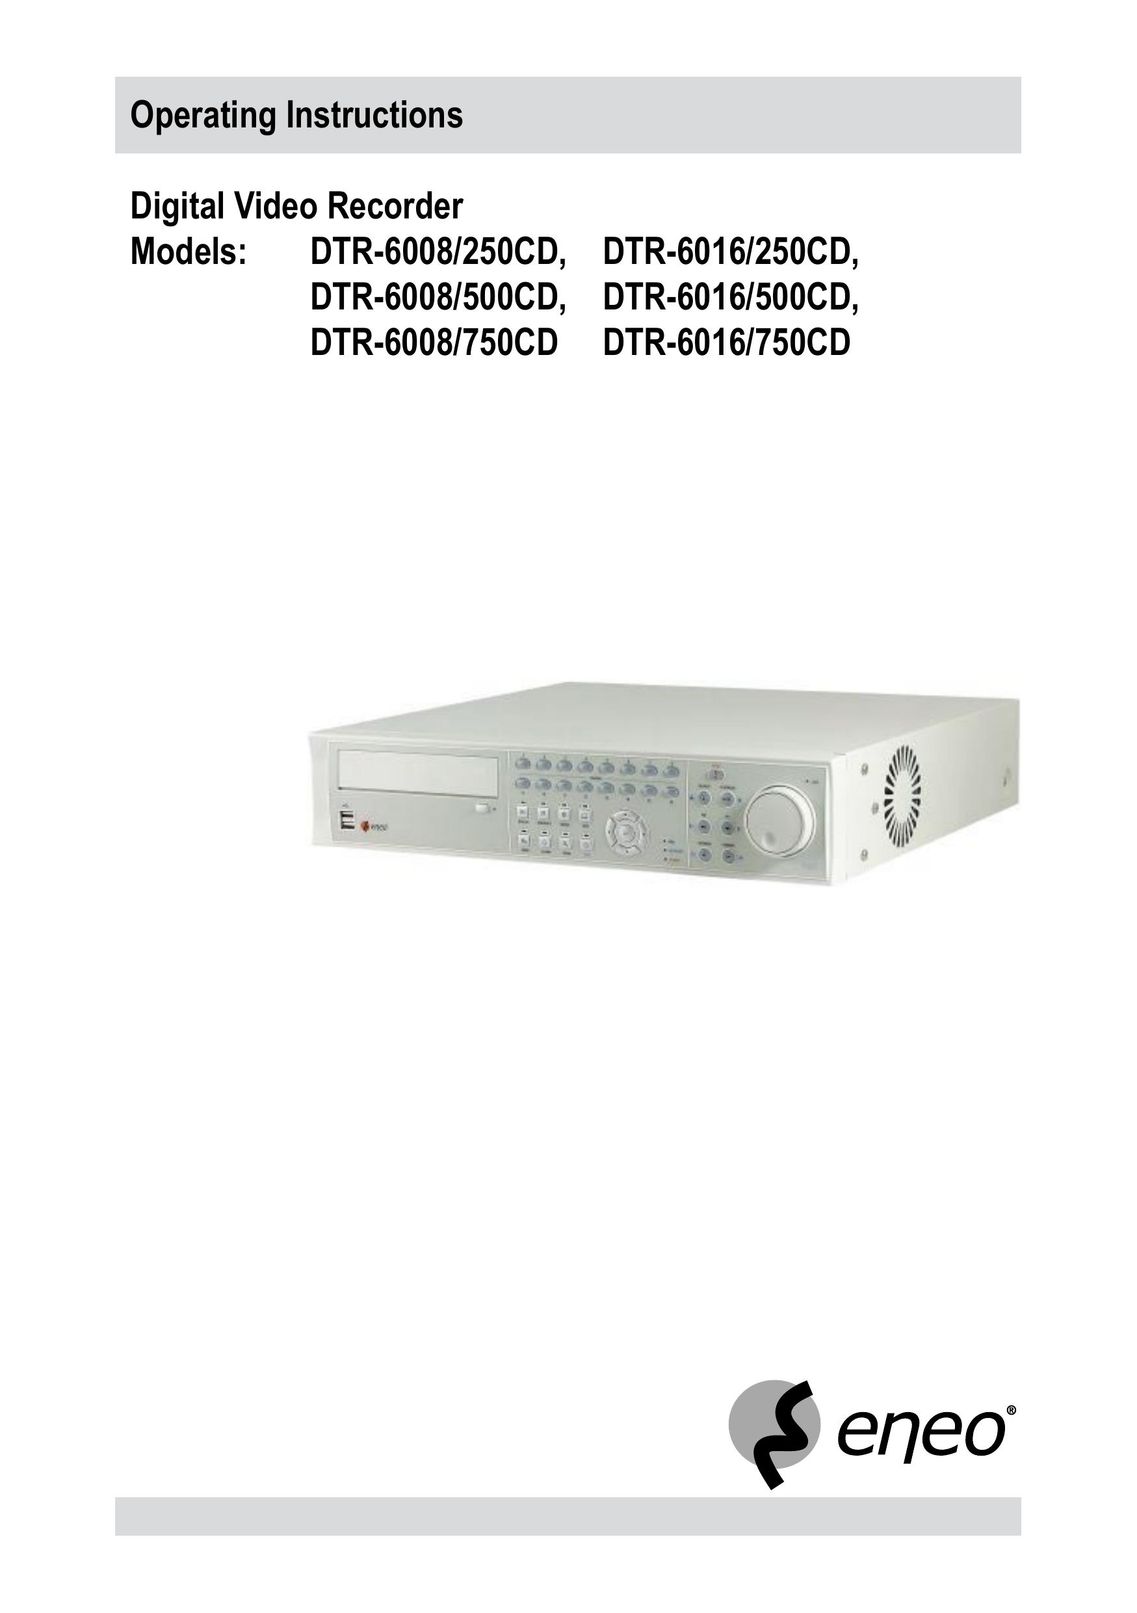 Epson DTR-6008/500CD DVR User Manual